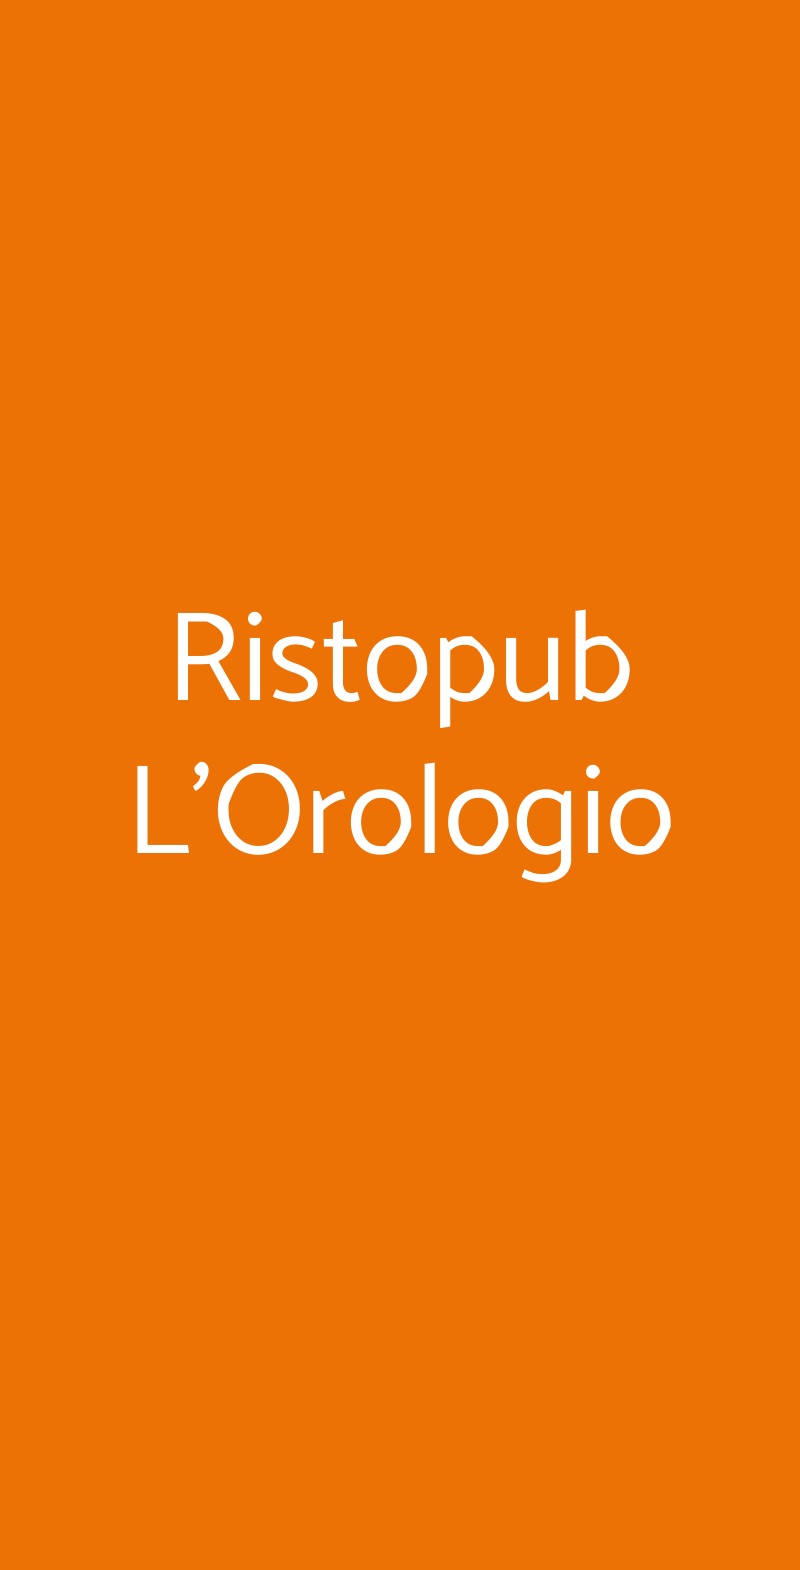 Ristopub L'Orologio Roma menù 1 pagina